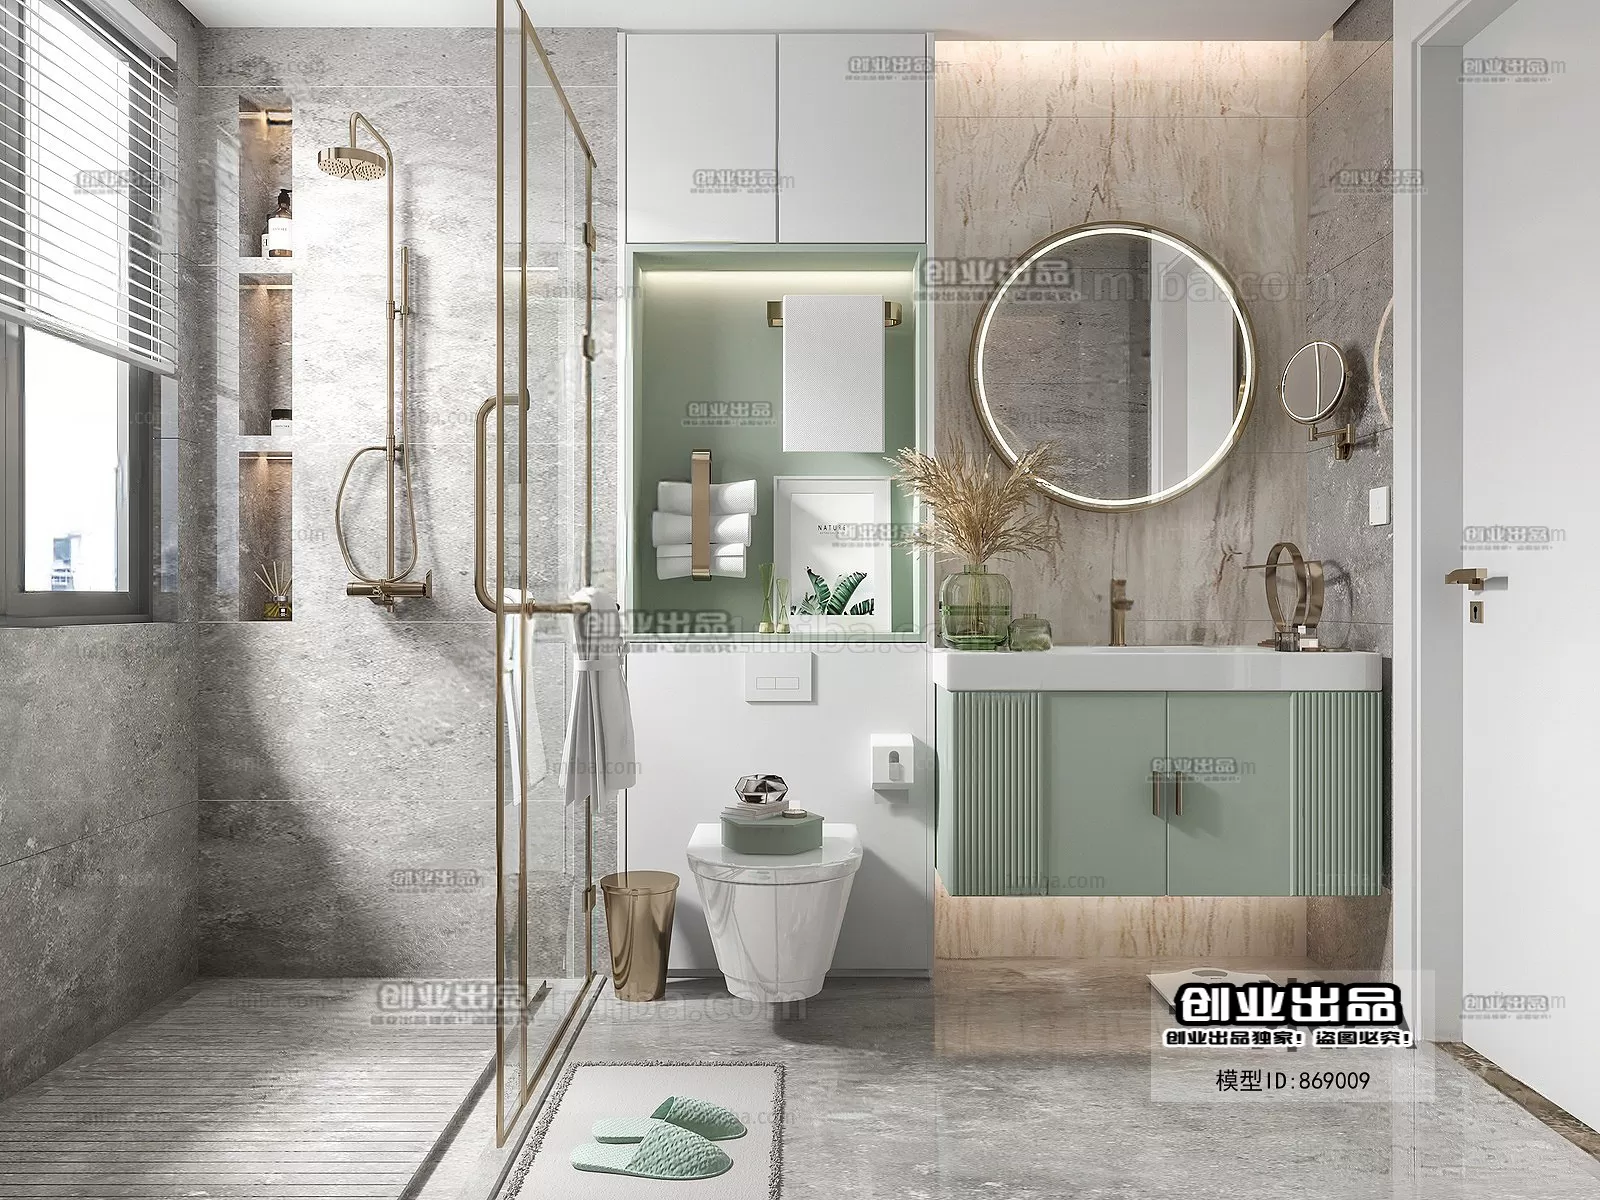 Bathroom – Scandinavian architecture – 020